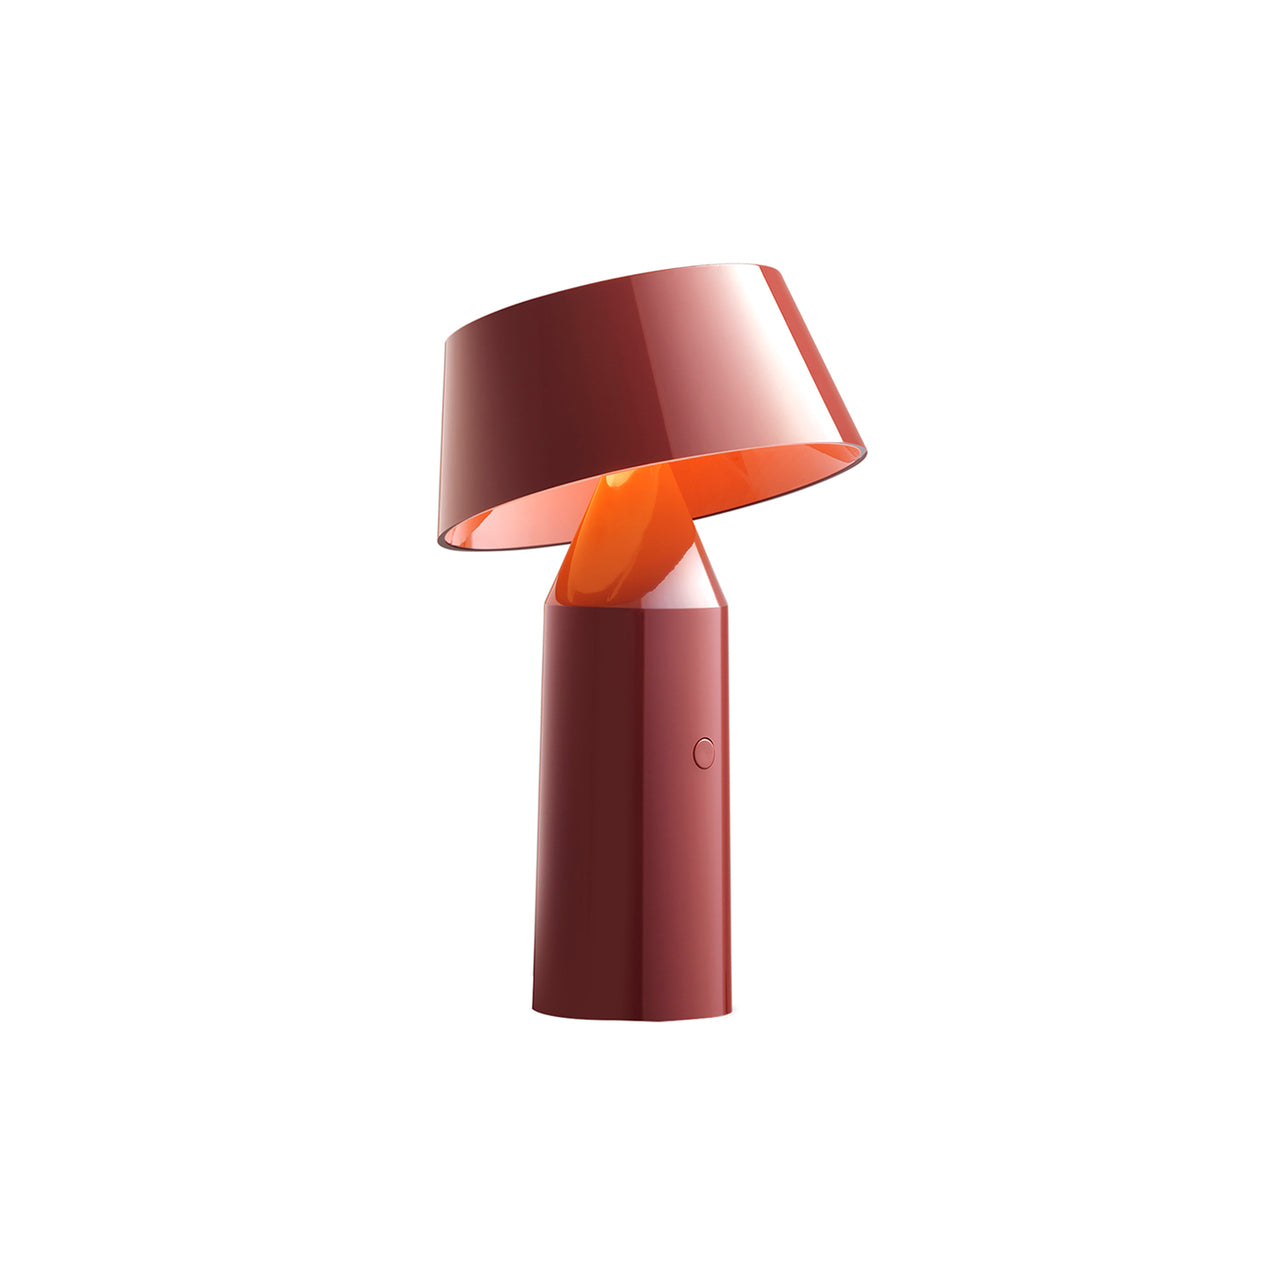 Bicoca Table Lamp: Portable + Red Wine